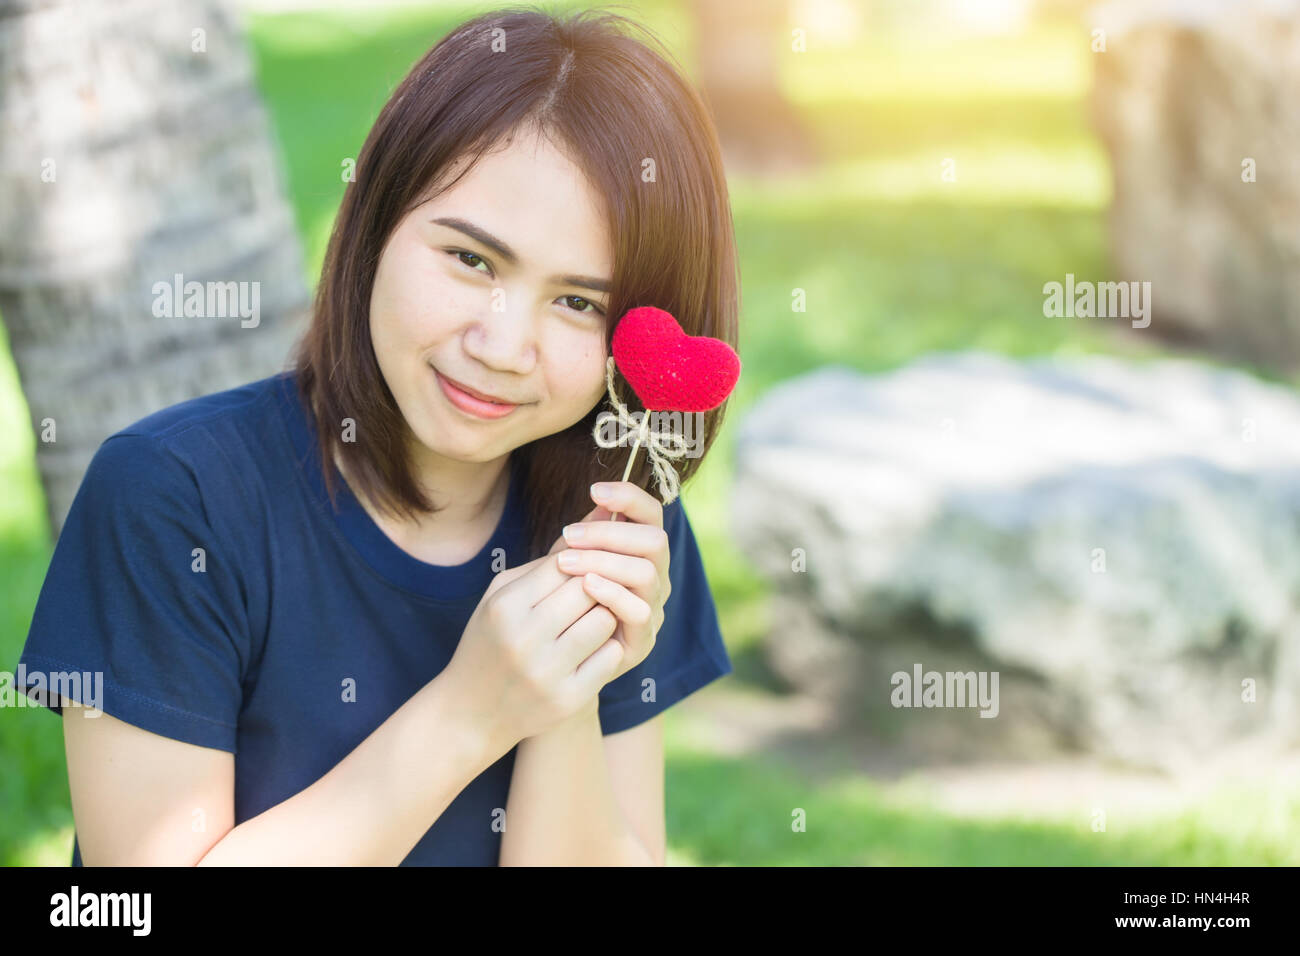 Nouvel ami aime rencontrer et sourire mignon date Thai asiatique teen main courante red heart sweet loving symbole de prendre soin ou de charité pour aider à vous. Banque D'Images